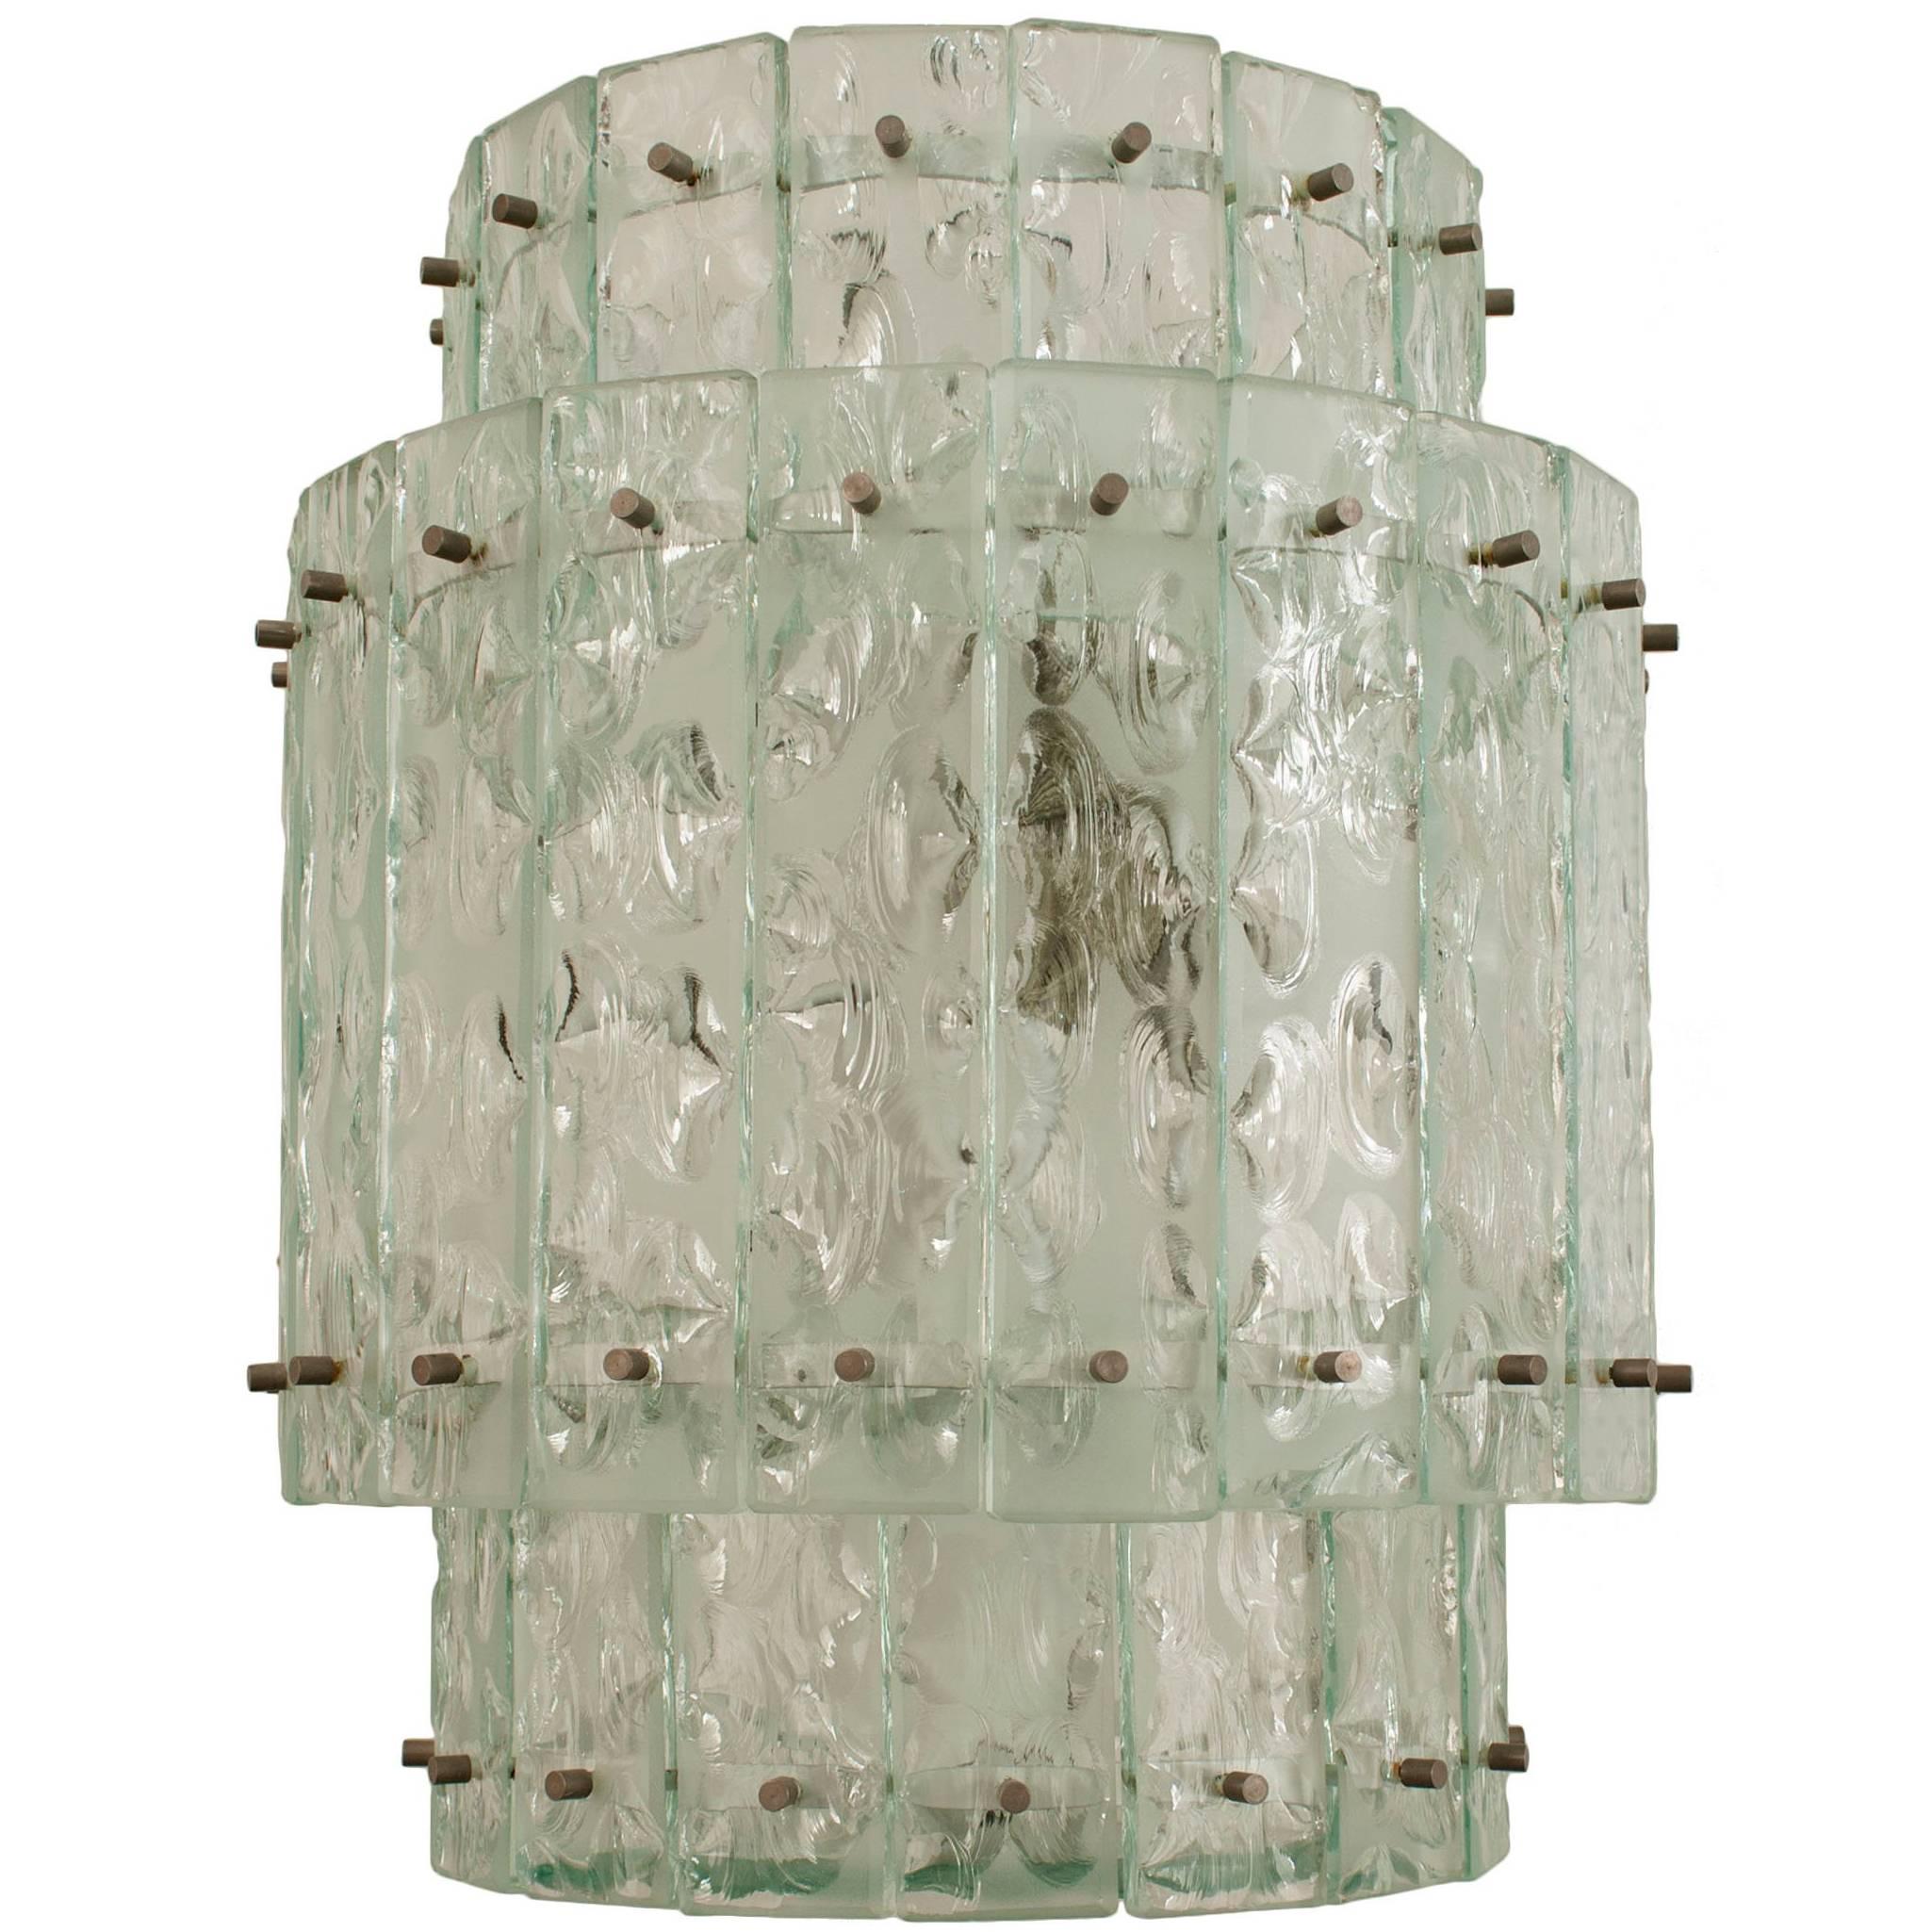 Lanterne italienne en verre cylindrique du milieu du siècle dernier, gravée à l'acide